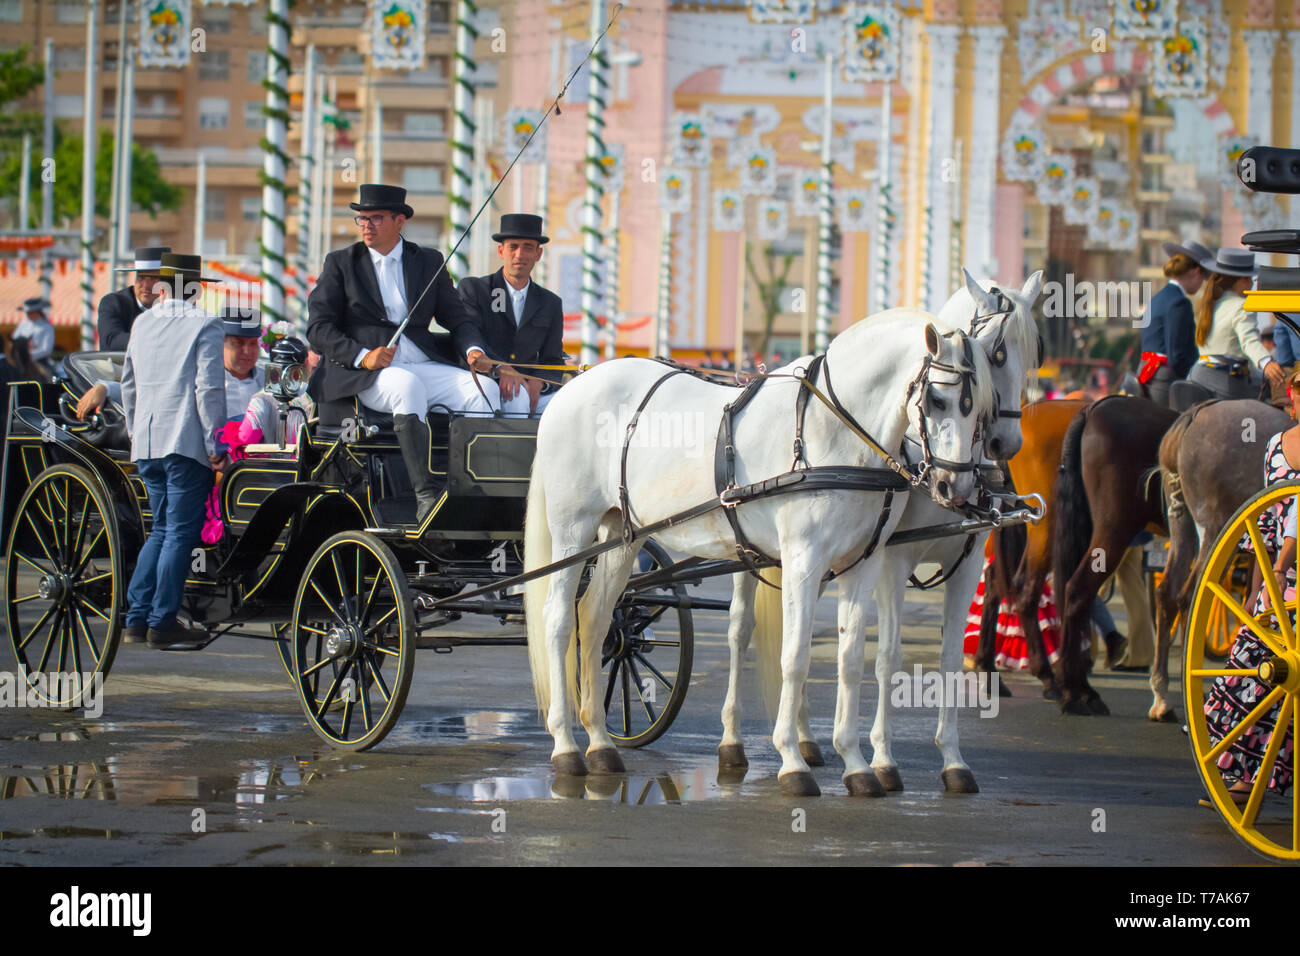 Sevilla, Spanien - APR, 2014: Menschen in traditionellen Kostümen auf Pferdewagen in Sevilla, Spanien Stockfoto